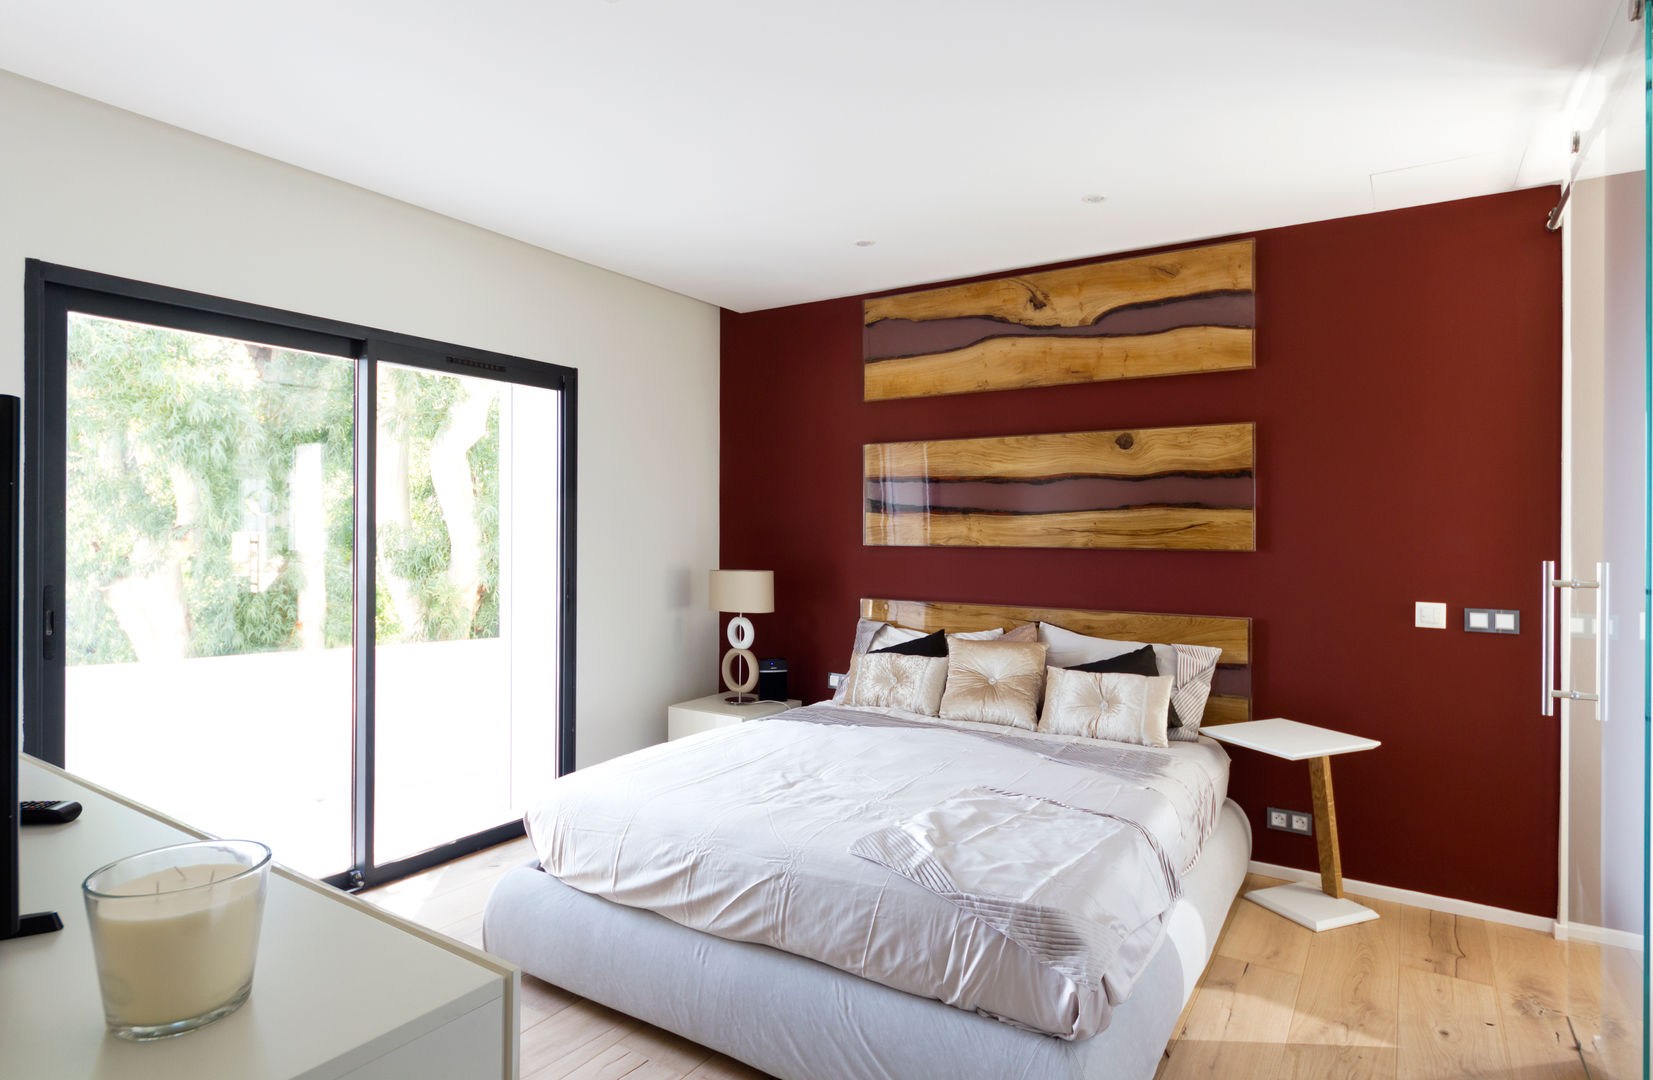 Restyling camera da letto con bagno en-suite, MBquadro Architetti MBquadro Architetti Modern Yatak Odası